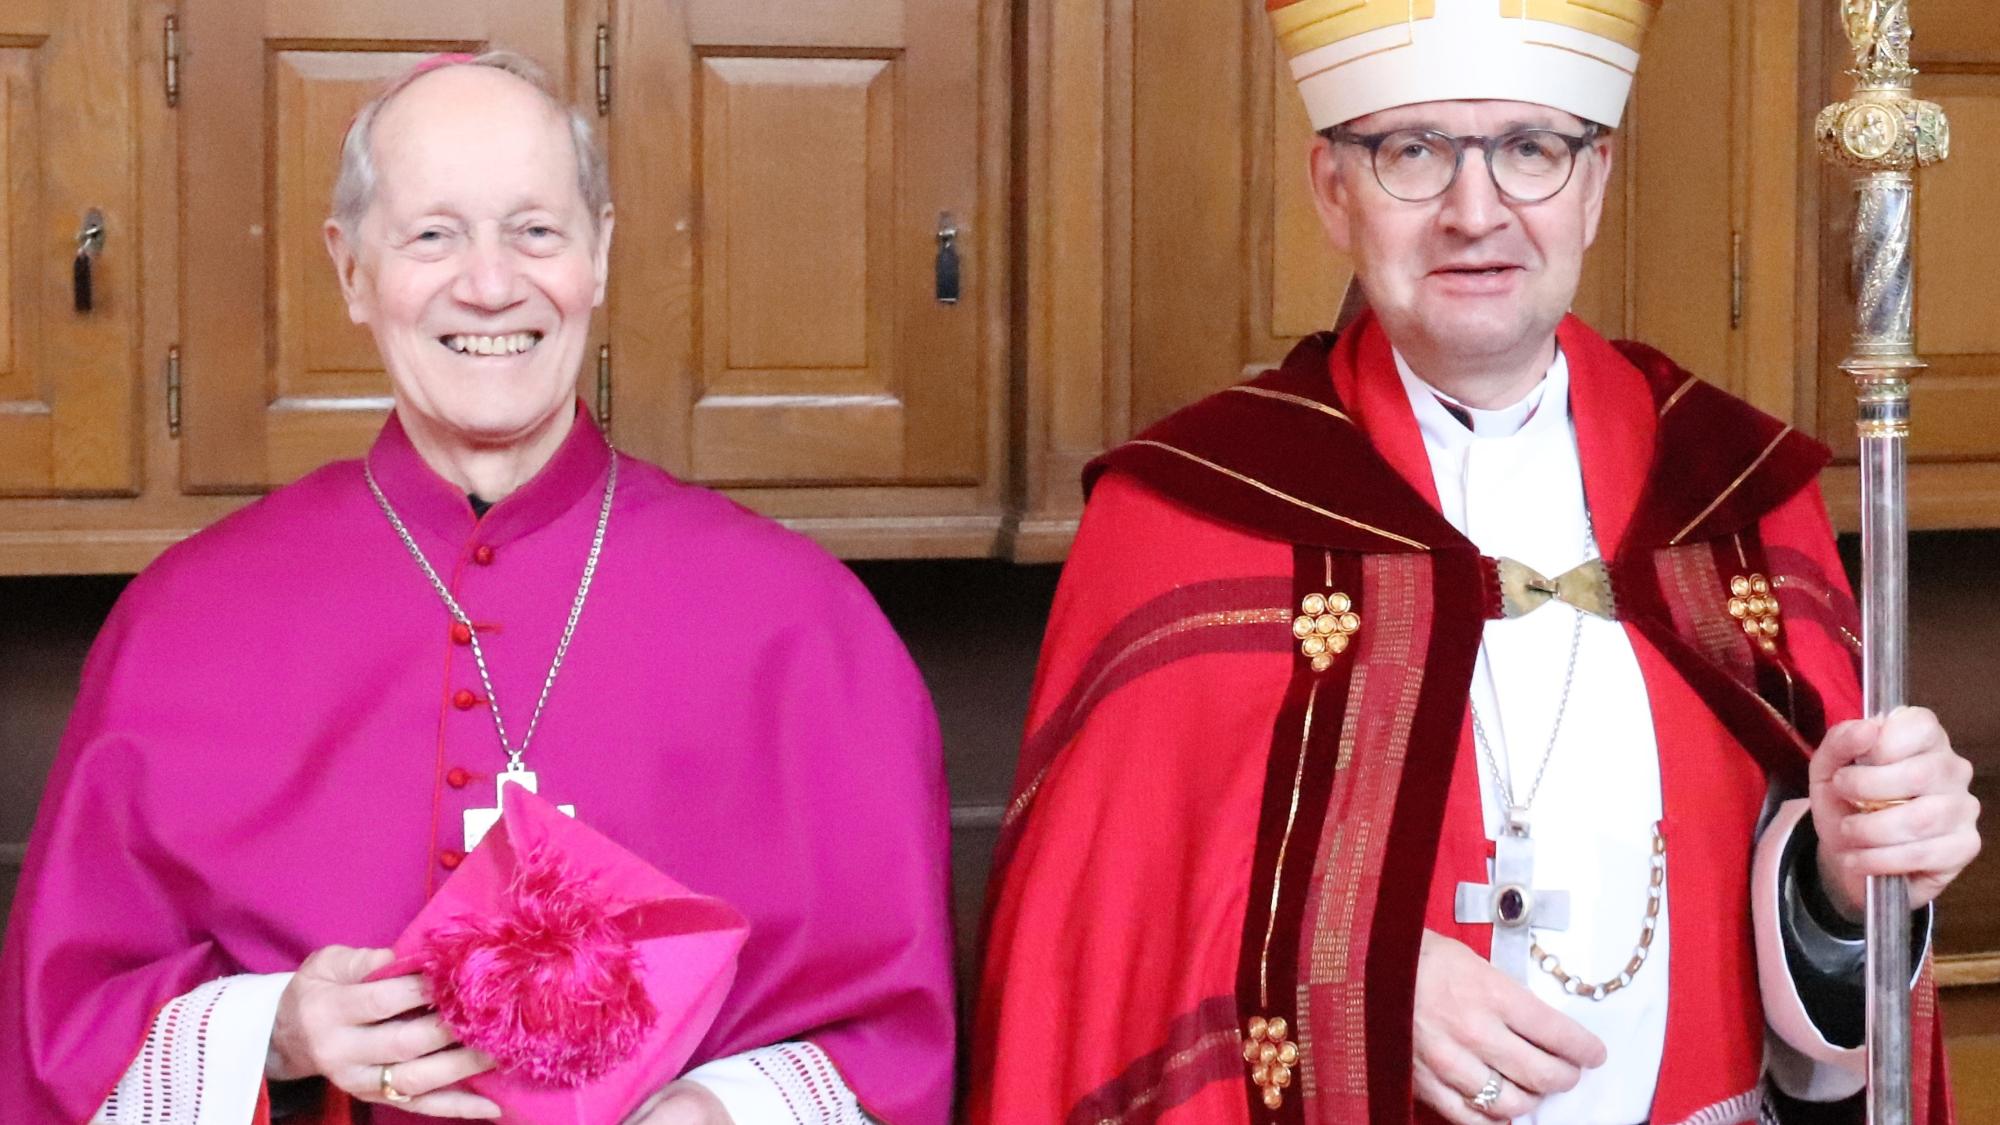 Weihbischof em. Franziskus Eisenbach mit Bischof Peter Kohlgraf